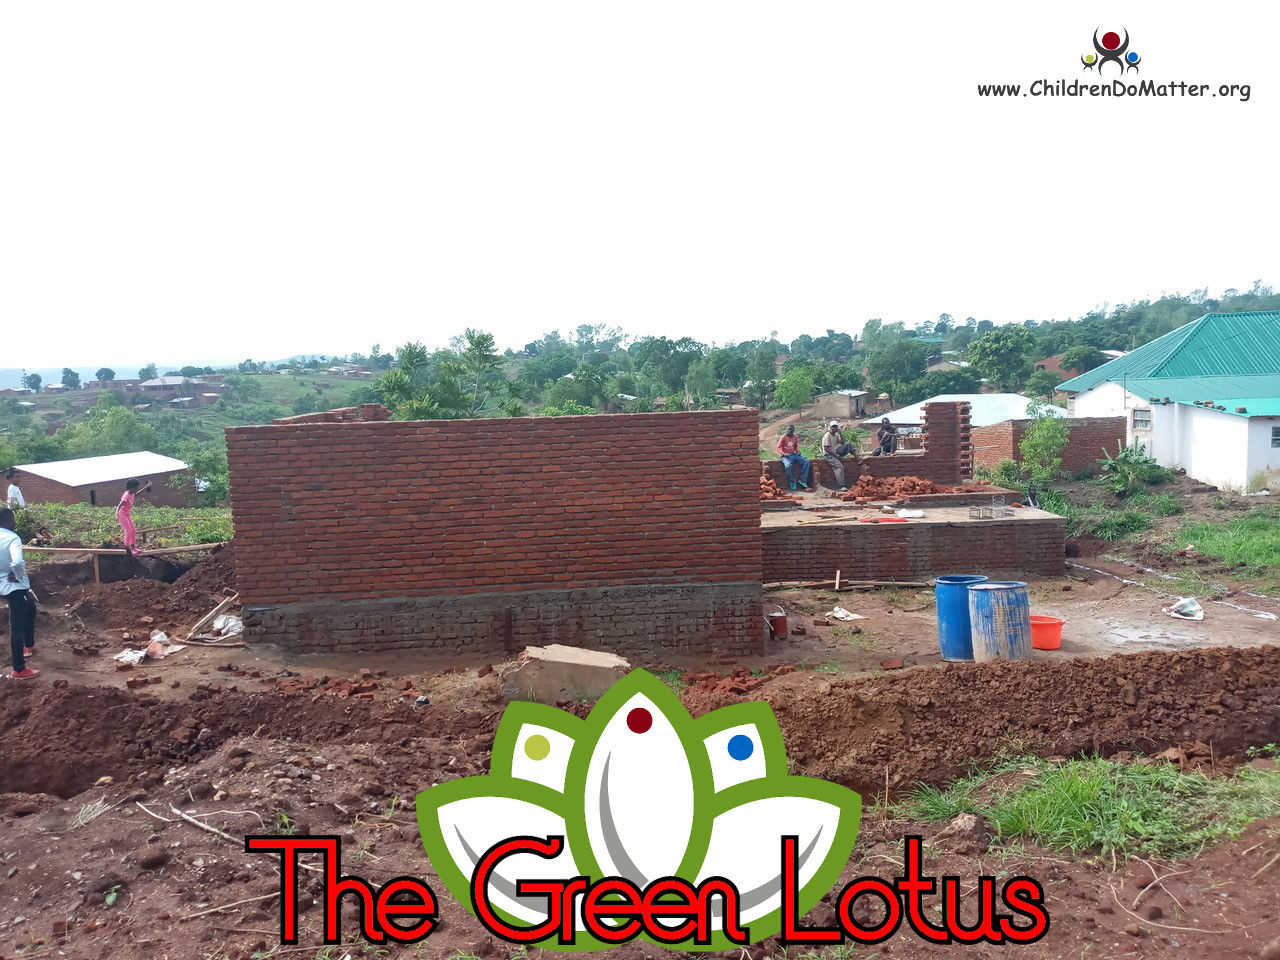 costruzione dell'orfanotrofio casa di accoglienza the green lotus a blantyre malawi - children do matter - 10